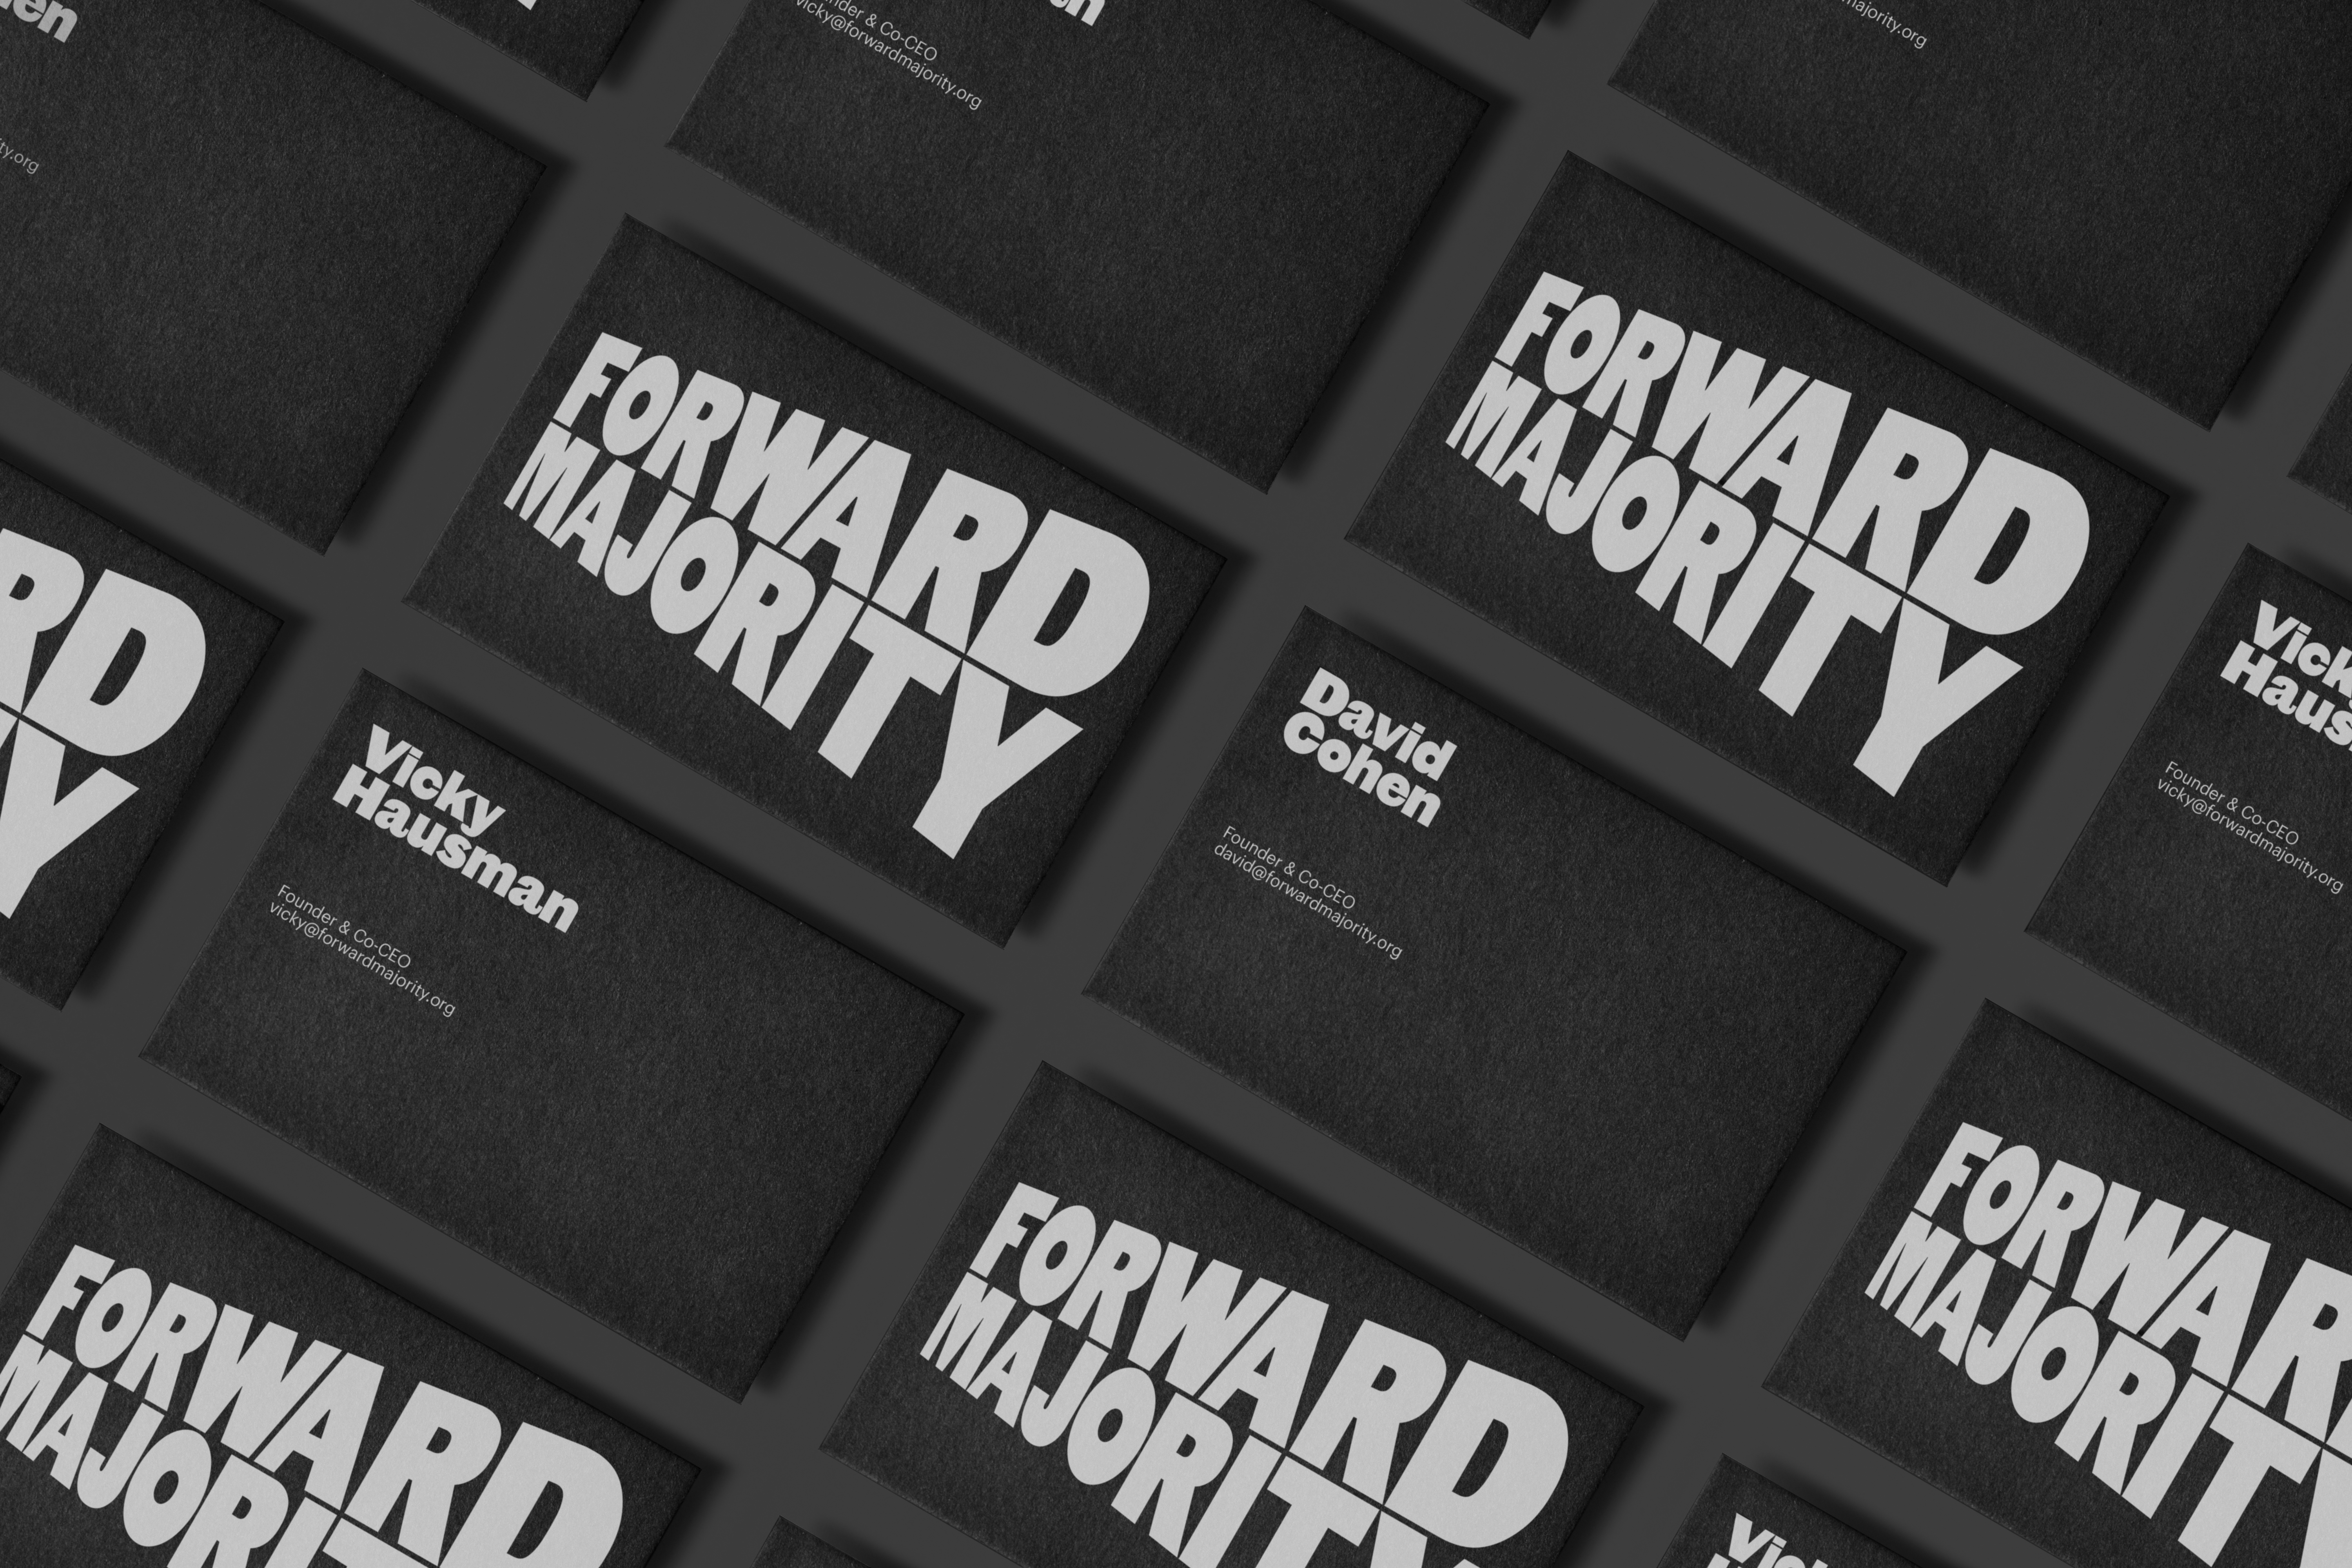 Identitas visual dan kartu nama untuk komite aksi politik Forward Majority dirancang oleh studio Order yang berbasis di New York